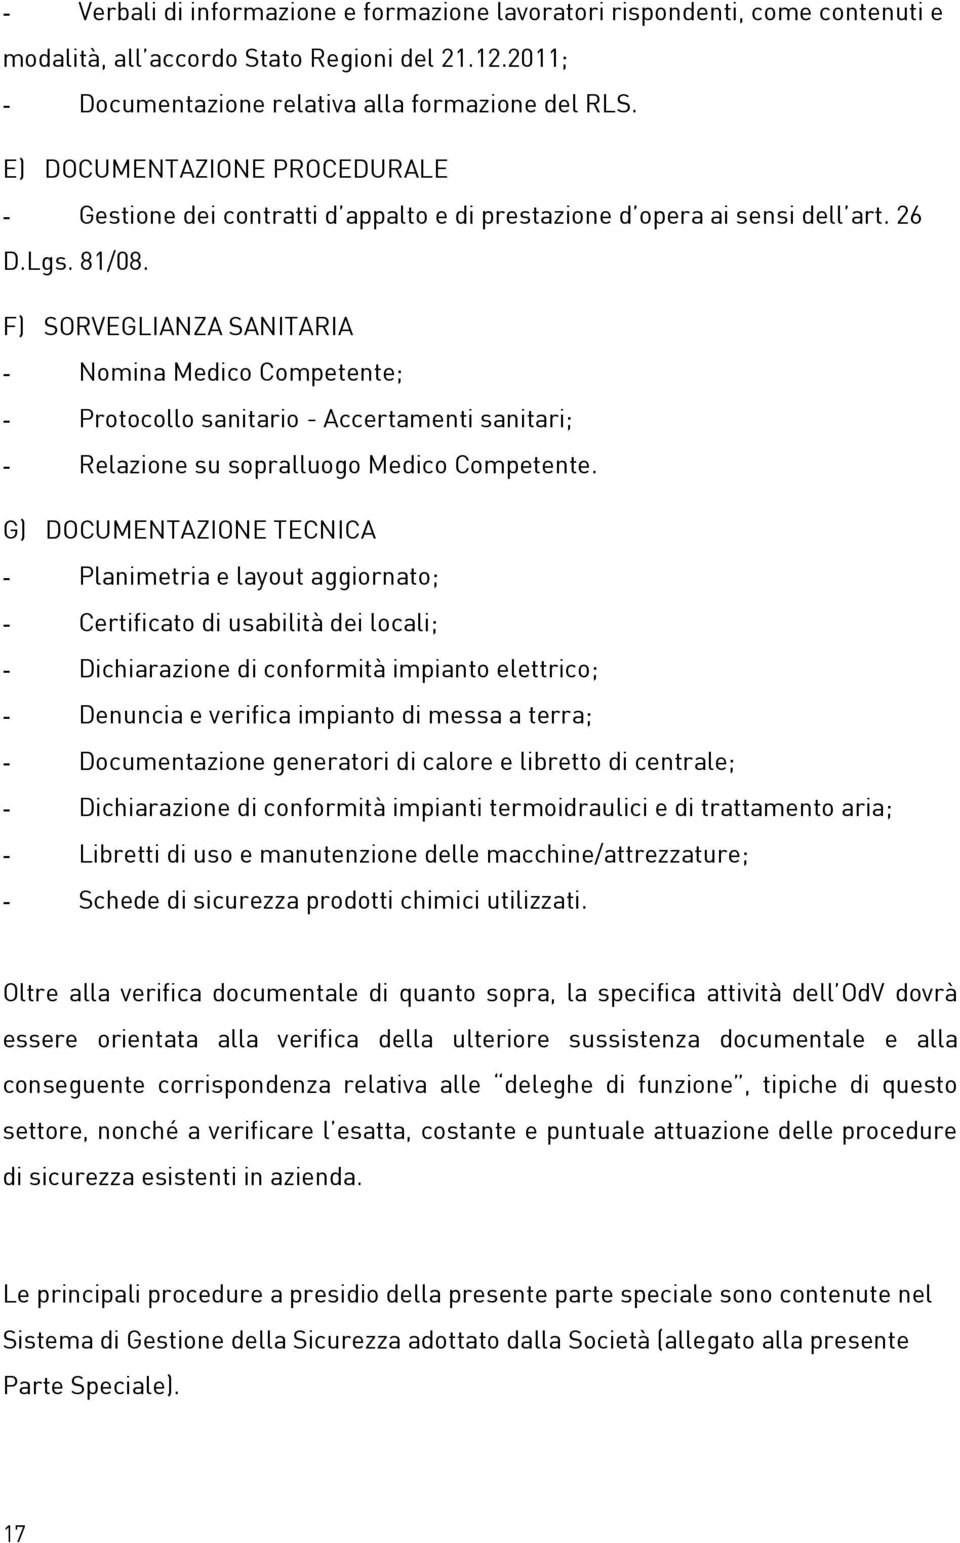 F) SORVEGLIANZA SANITARIA - Nomina Medico Competente; - Protocollo sanitario - Accertamenti sanitari; - Relazione su sopralluogo Medico Competente.